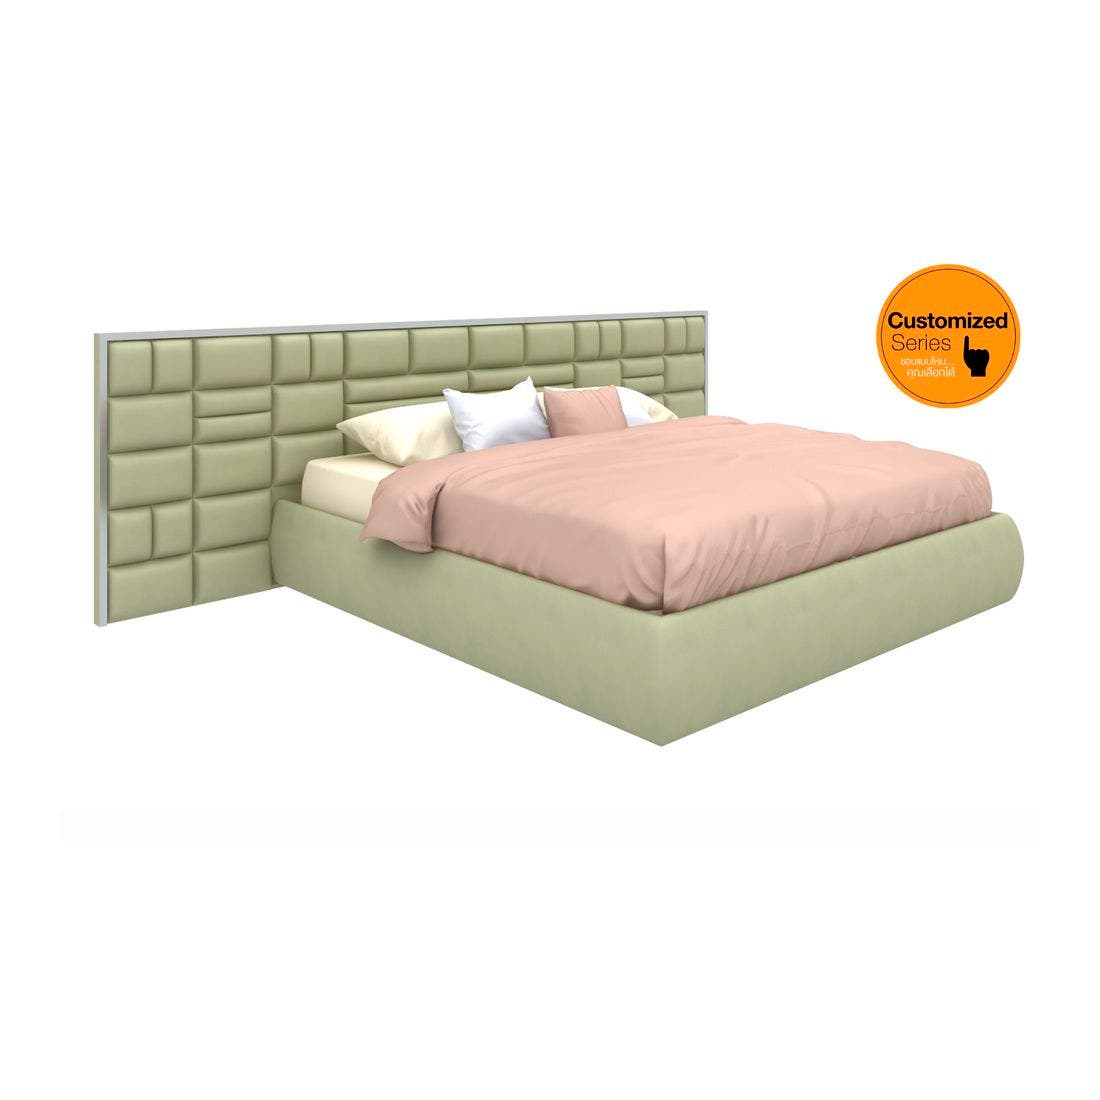 ชุดห้องนอน เตียงสั่งทำ รุ่น Fidelio-SB Design Square